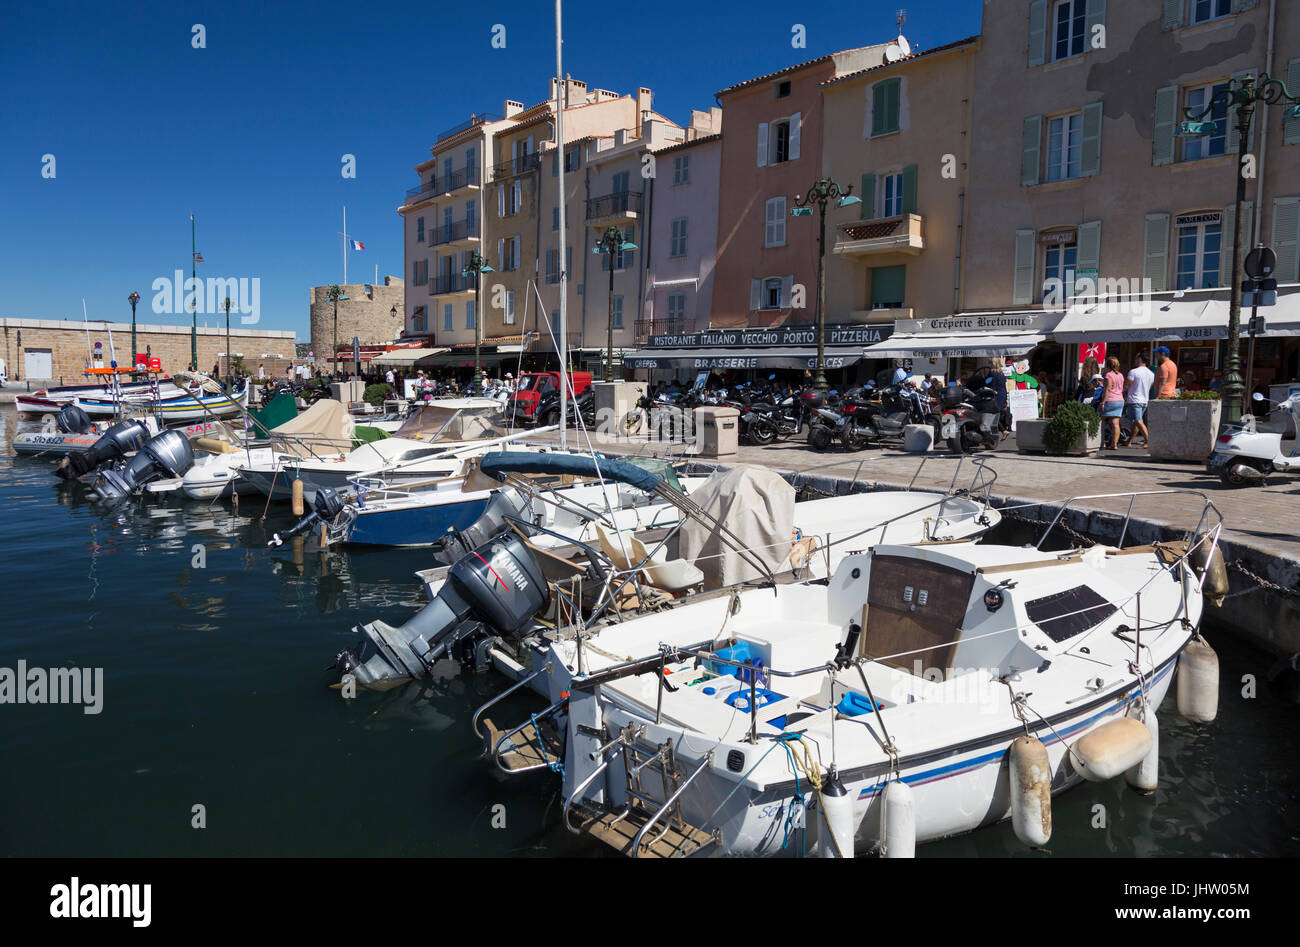 Hafen von Saint-Tropez (Le Vieux port de Saint Tropez), Frankreich Stockfoto